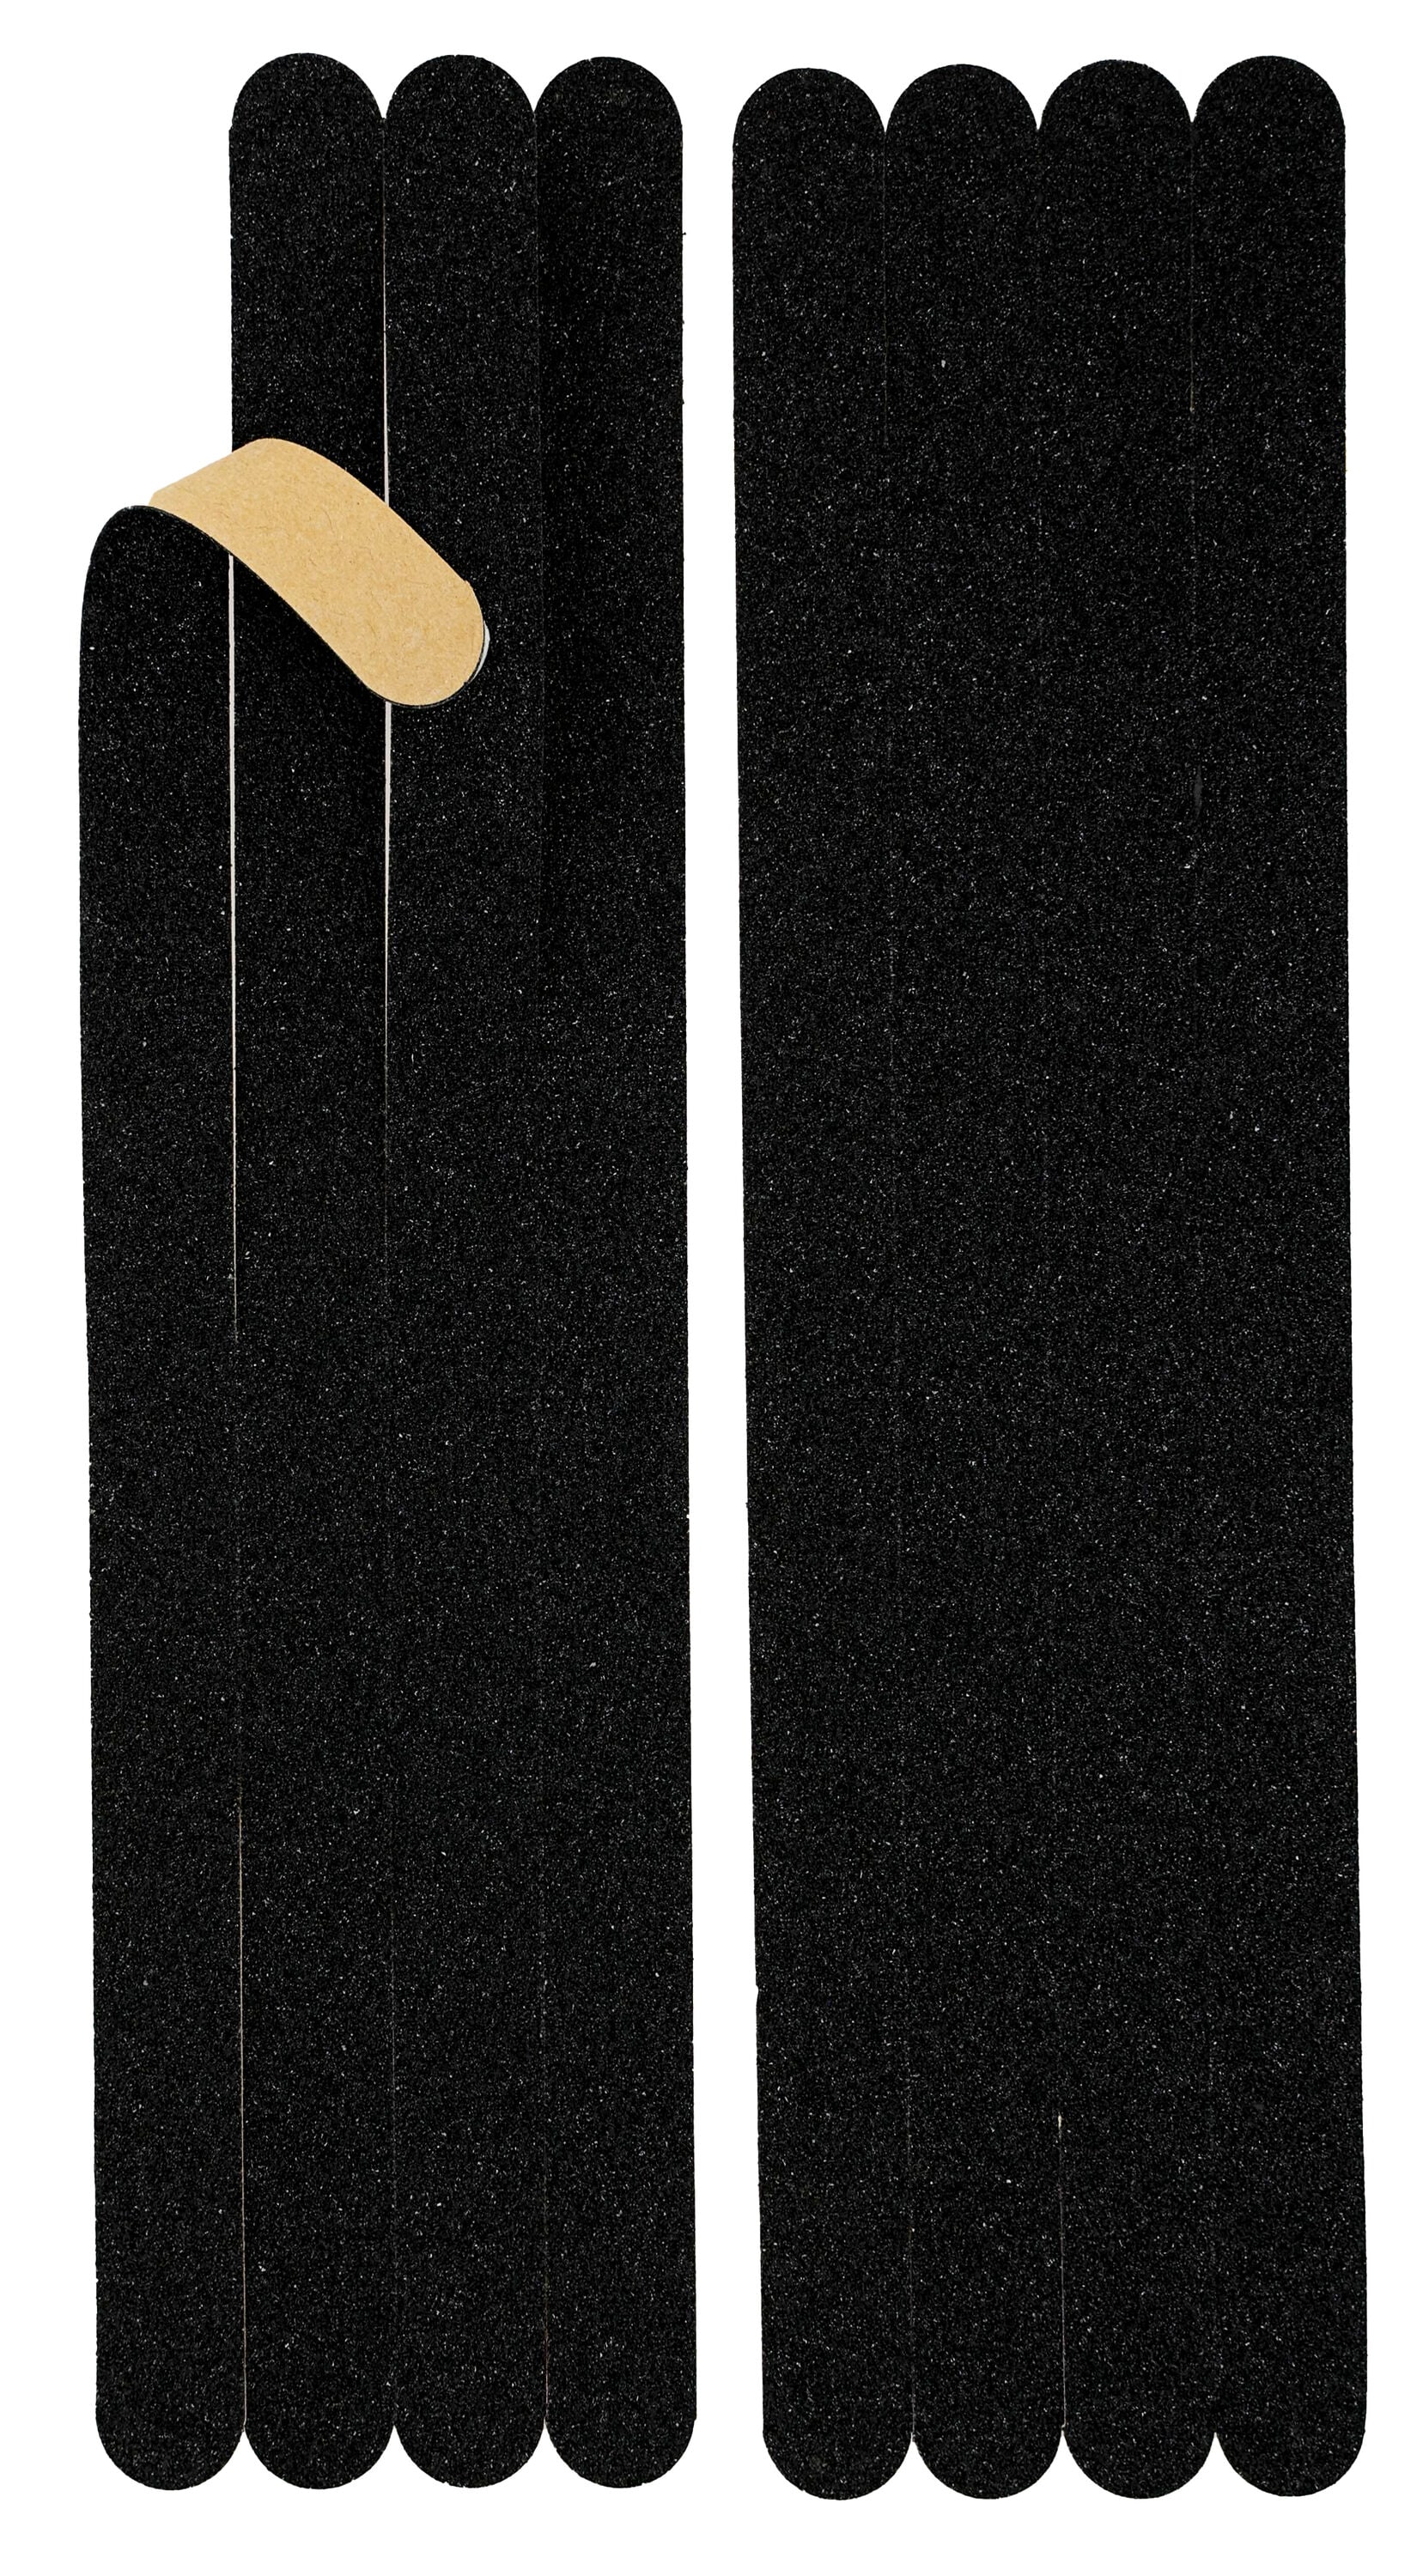 3M Slip Resistant Tape 4-in x 180-in Black Tape Roll Anti-Slip